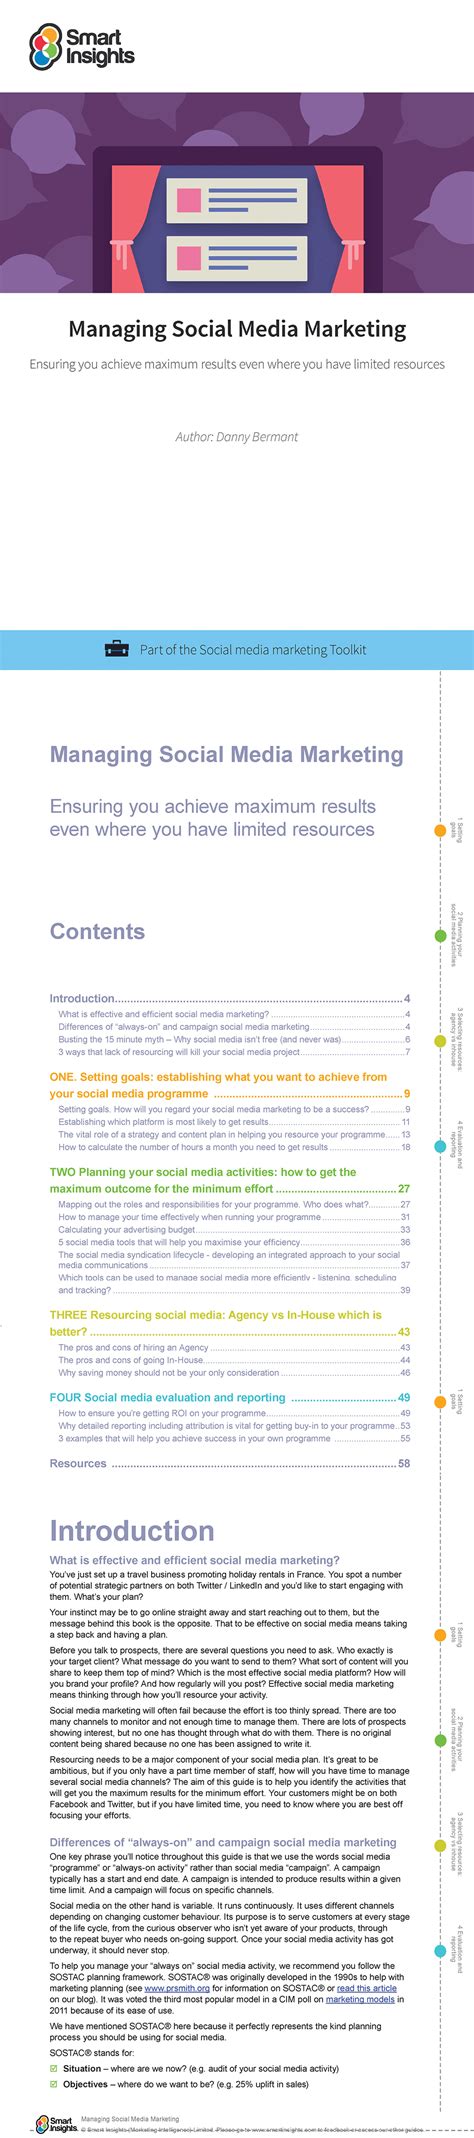 Managing Social Media Marketing Guide Smart Insights